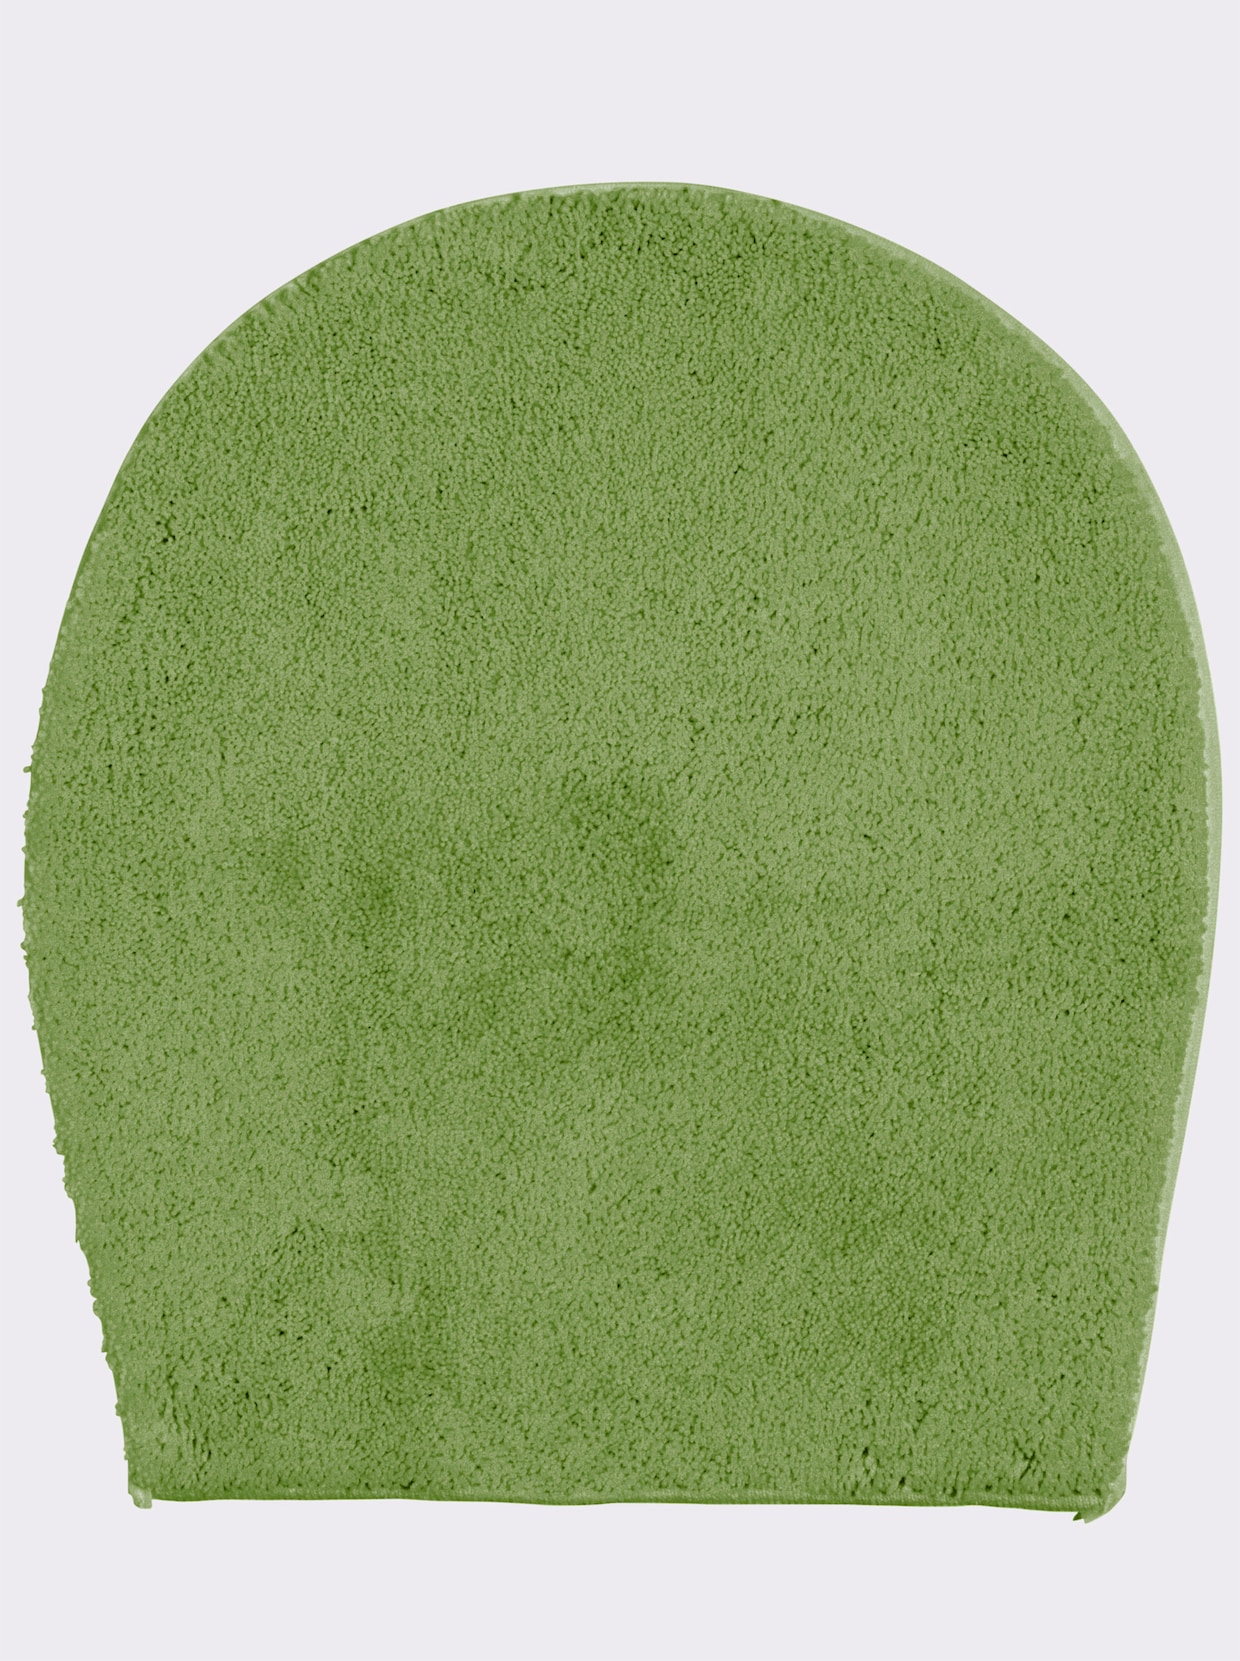 Grund Badmat - groen